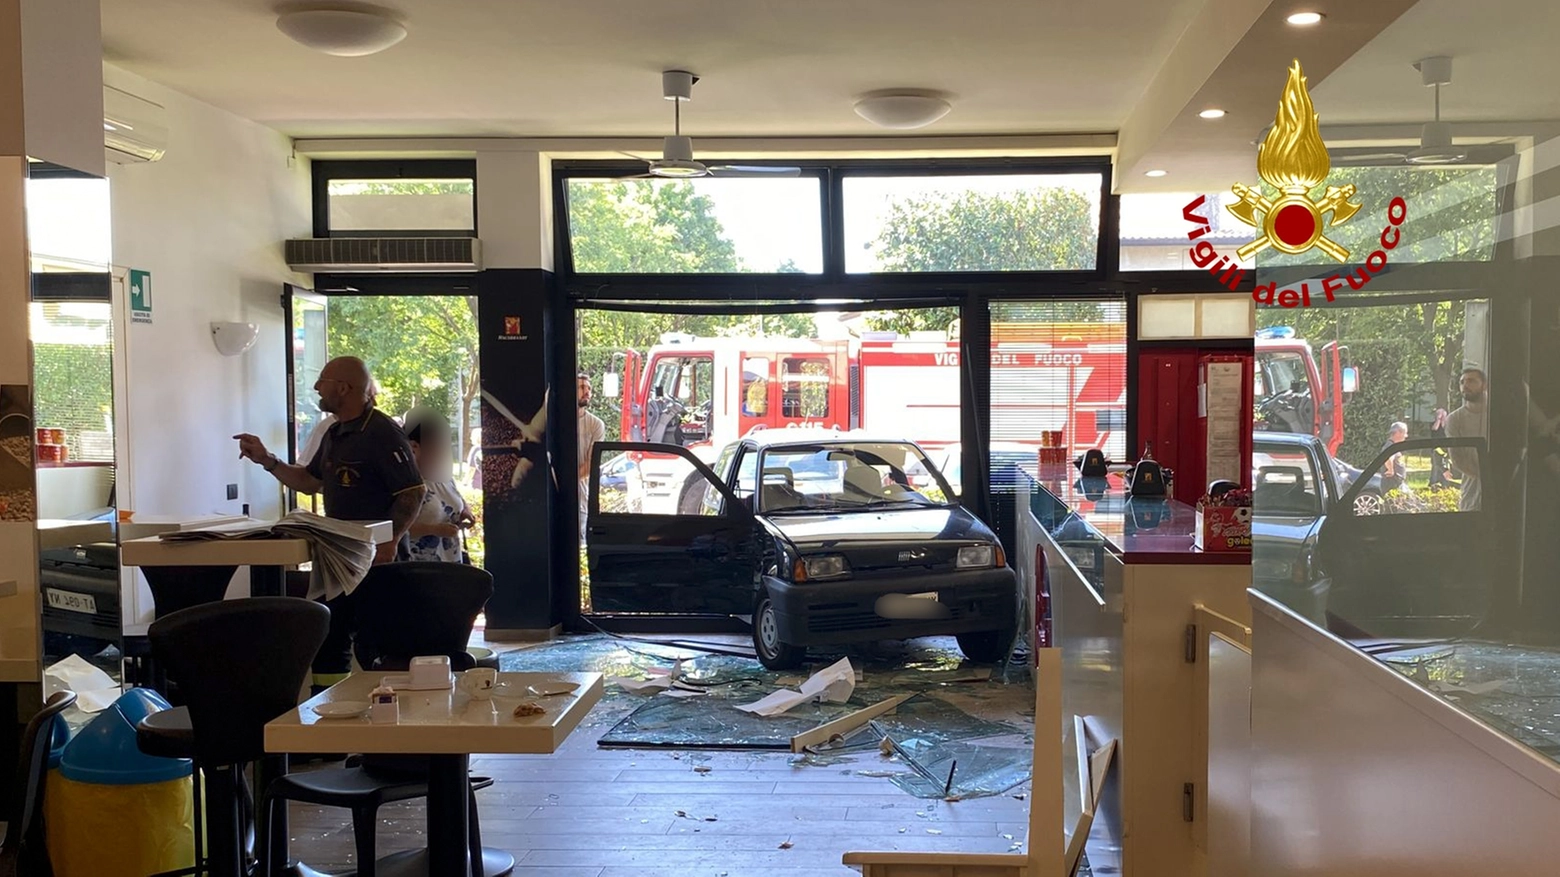 Un incidente avvenuto nella mattina, mentre nel locale c’erano molti clienti. Tempestivo gli interventi dei soccorsi